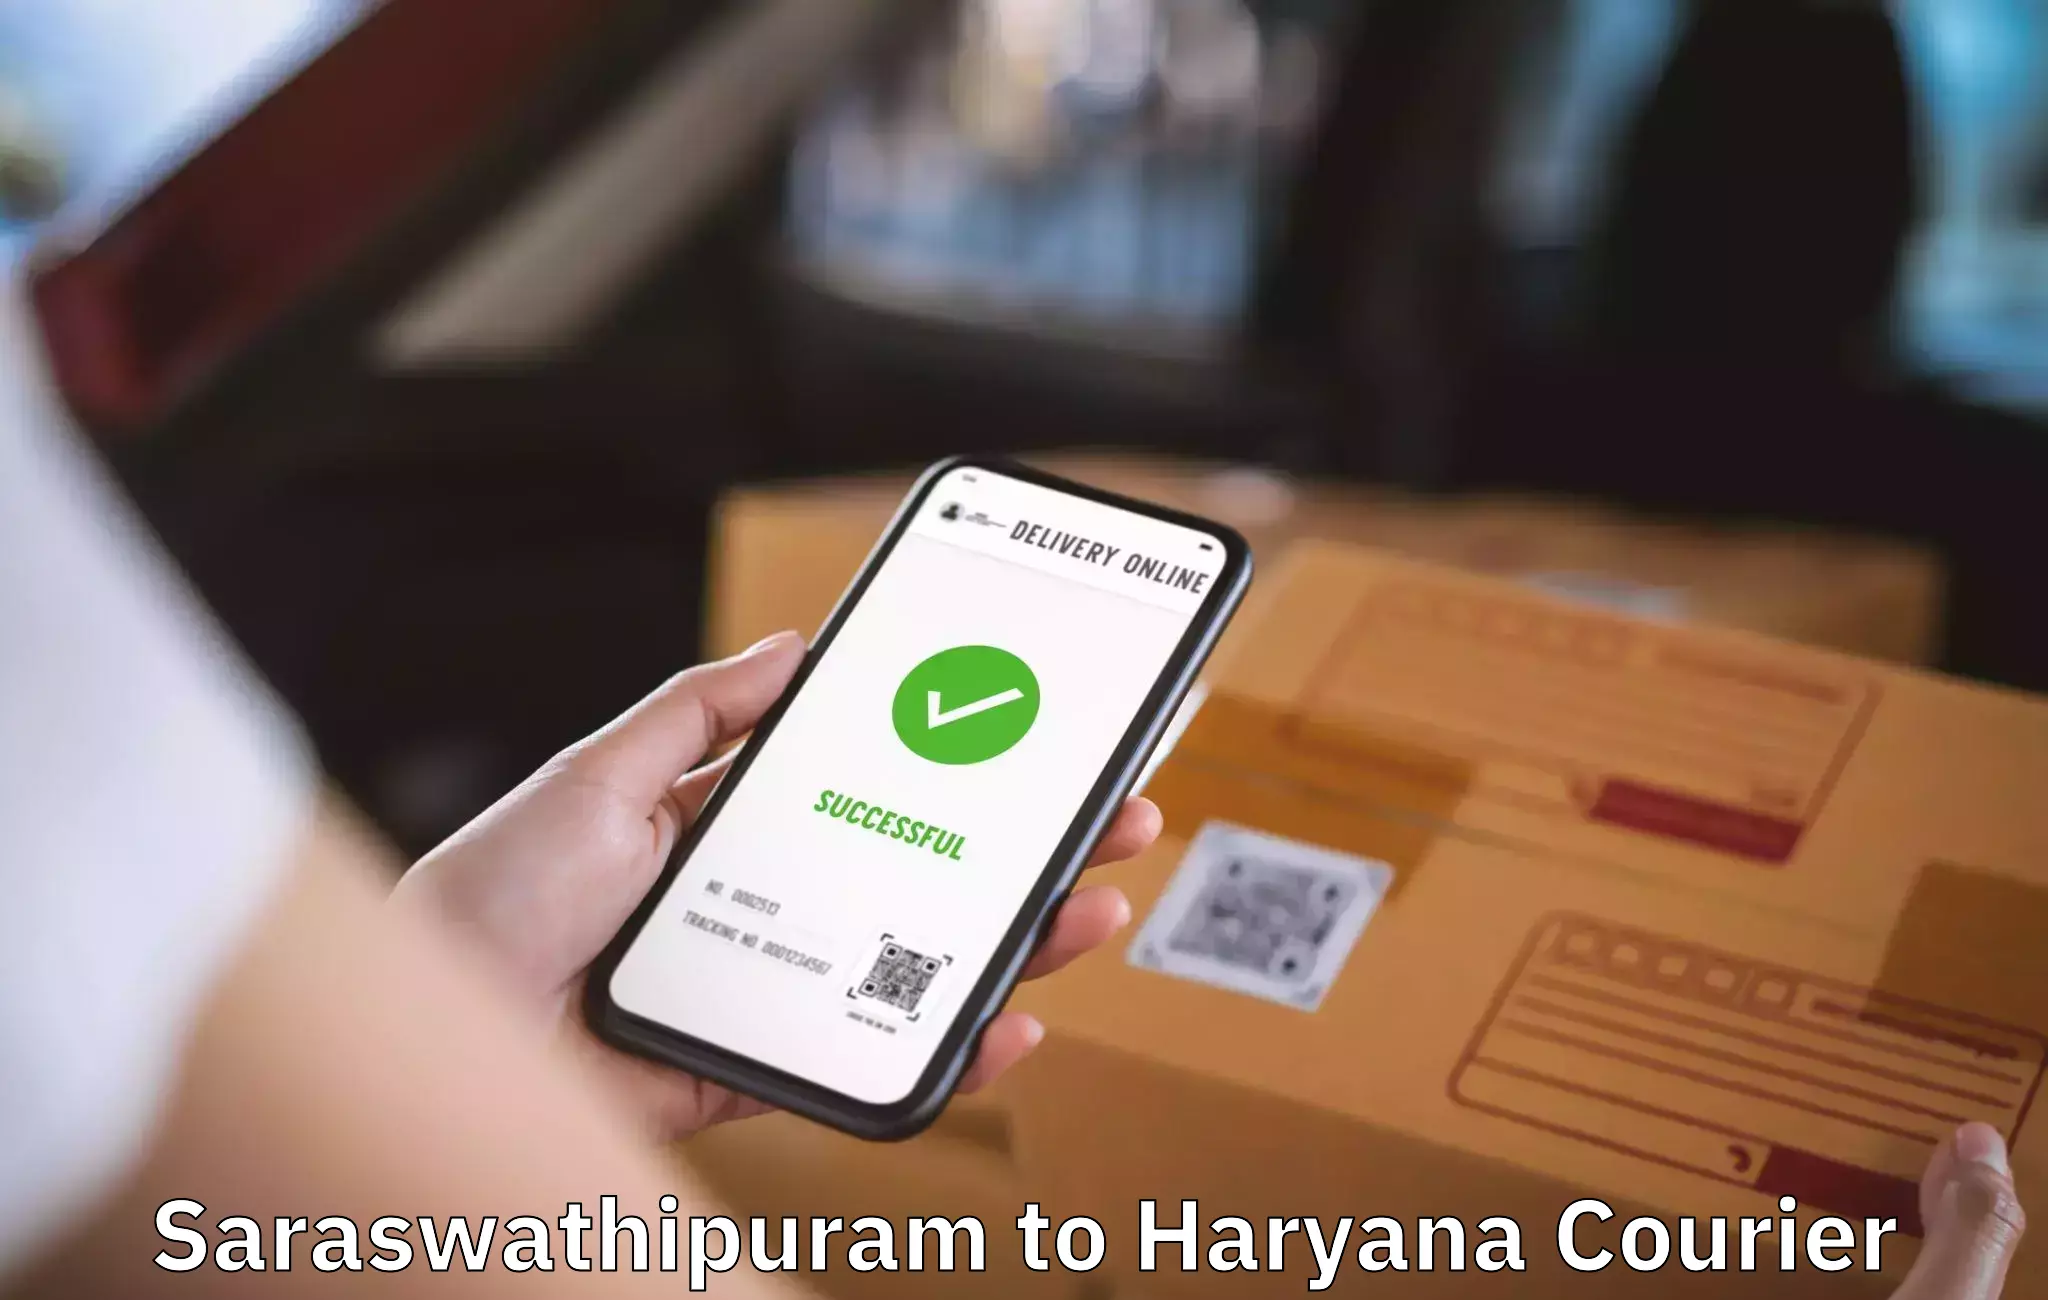 Furniture moving experts Saraswathipuram to NCR Haryana